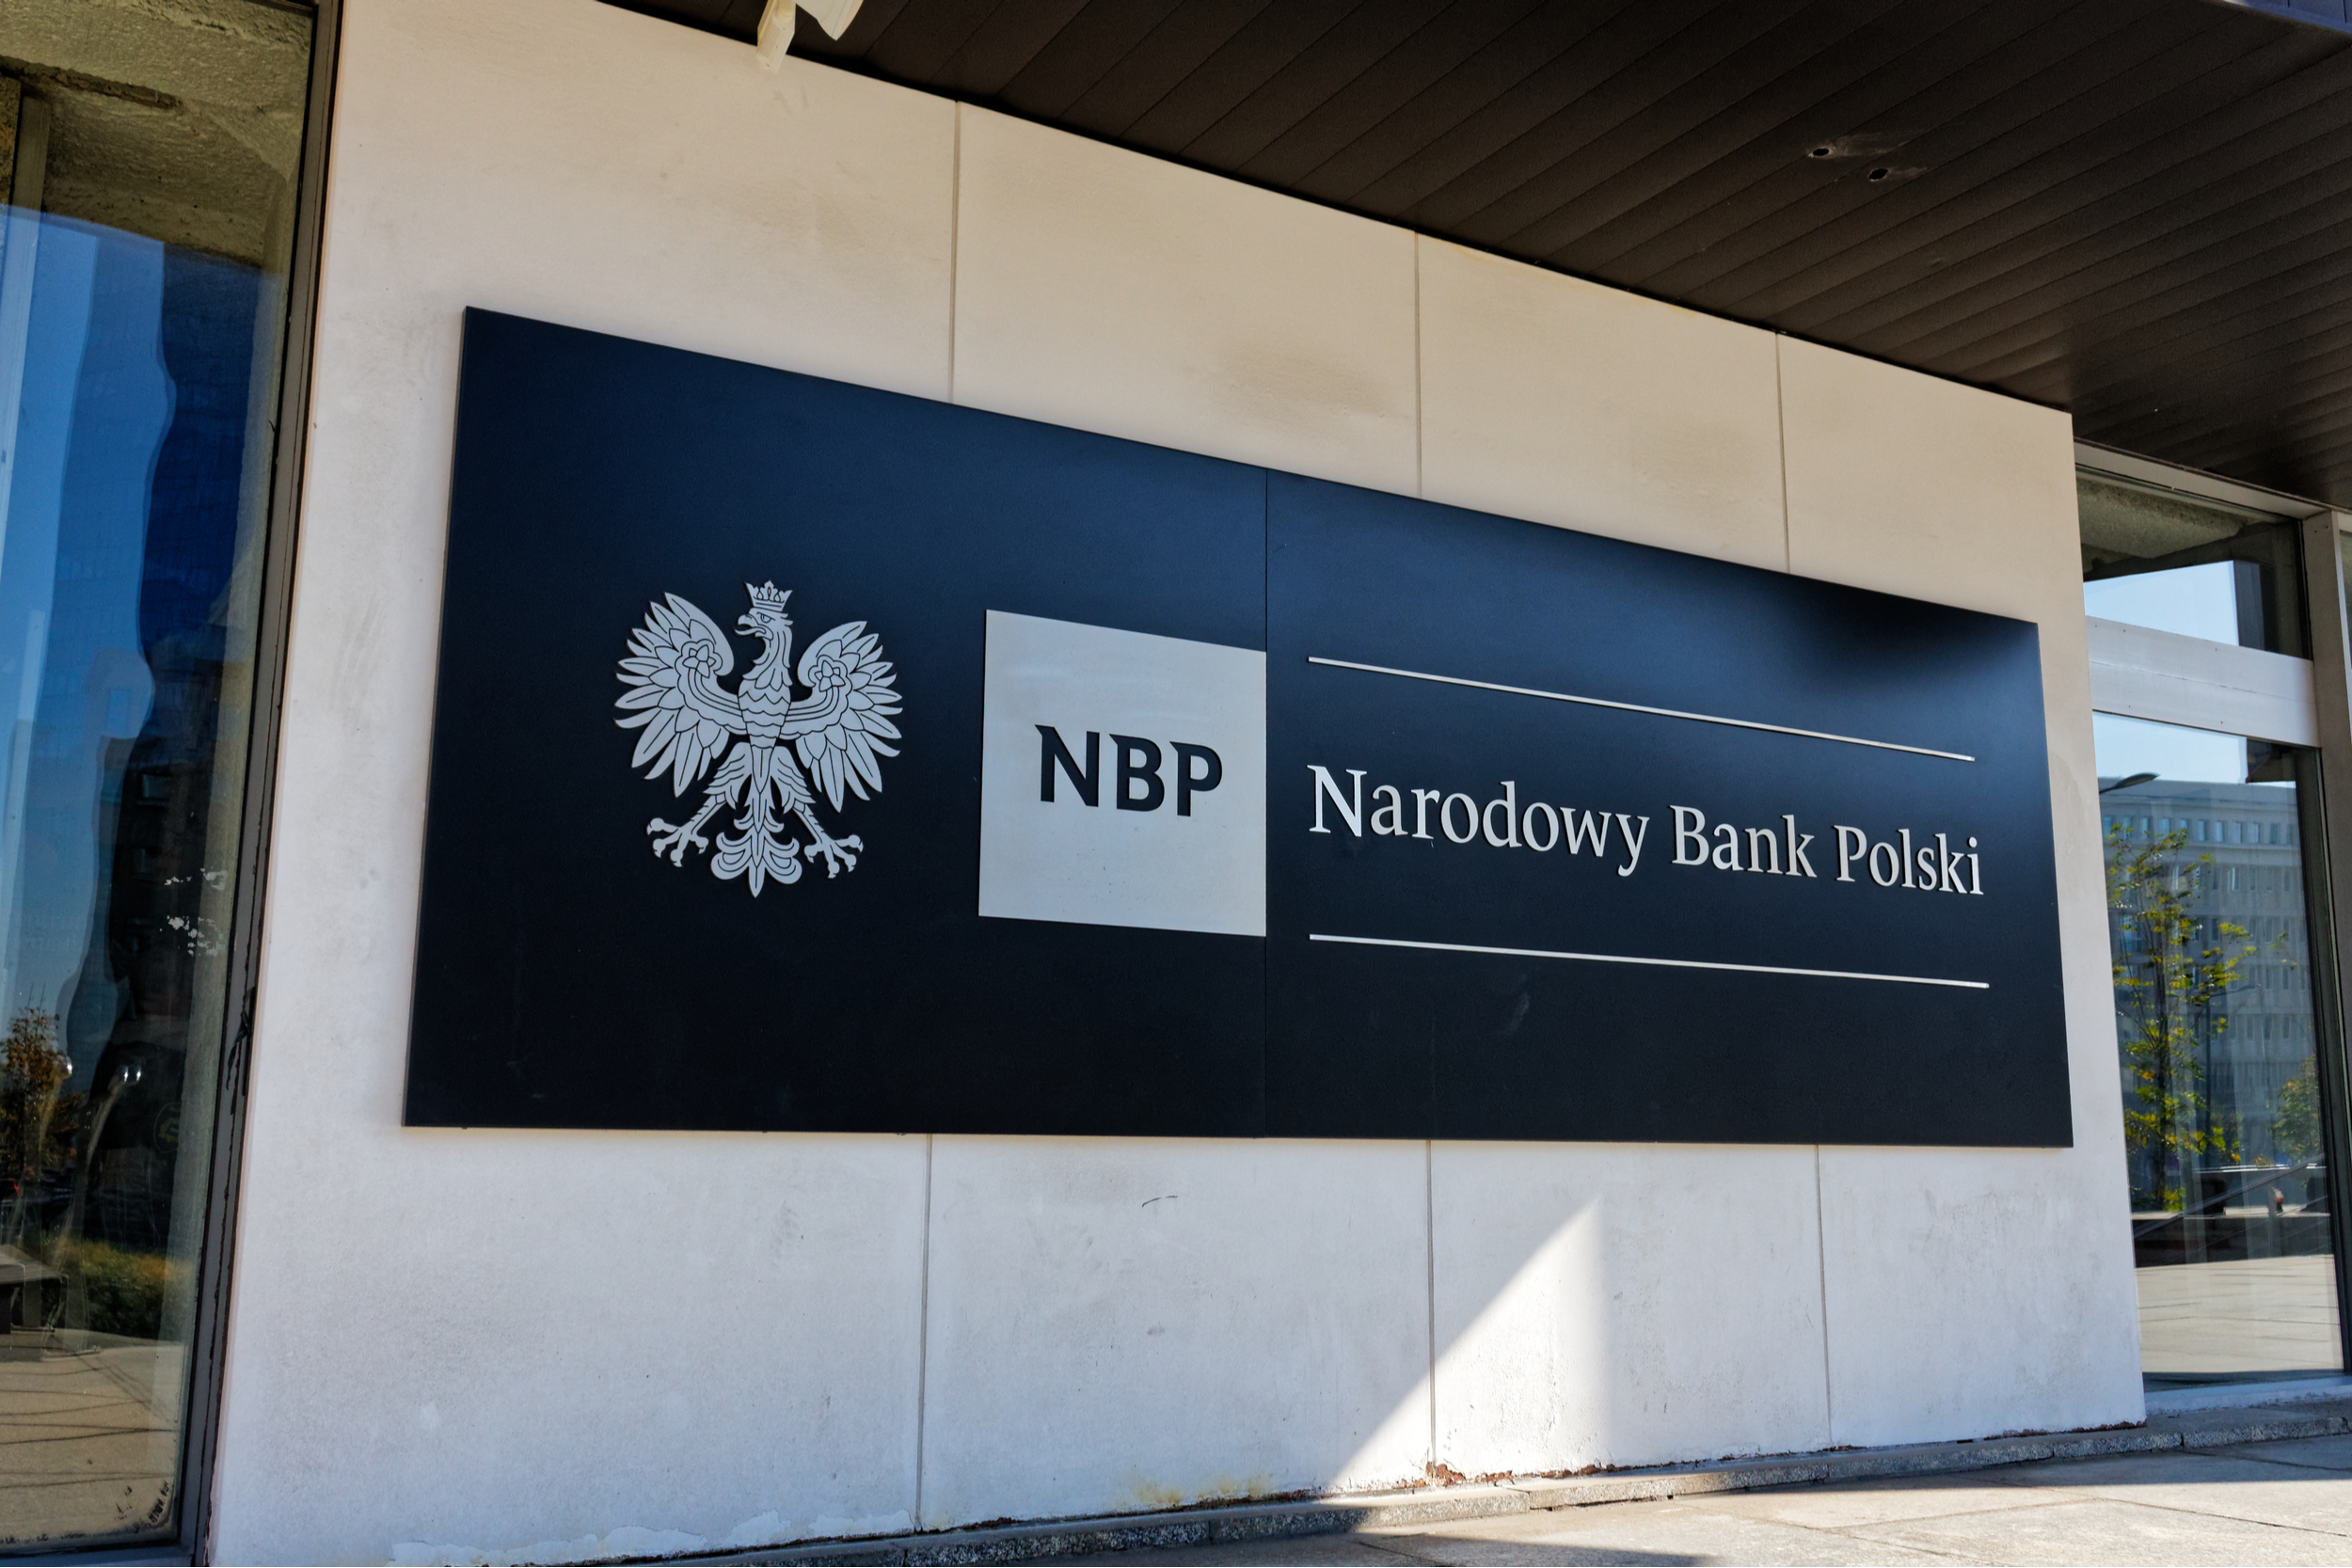 Narodowy Bank Polski NBP. Fot. MOZCO Mateusz Szymanski / Shutterstock.com